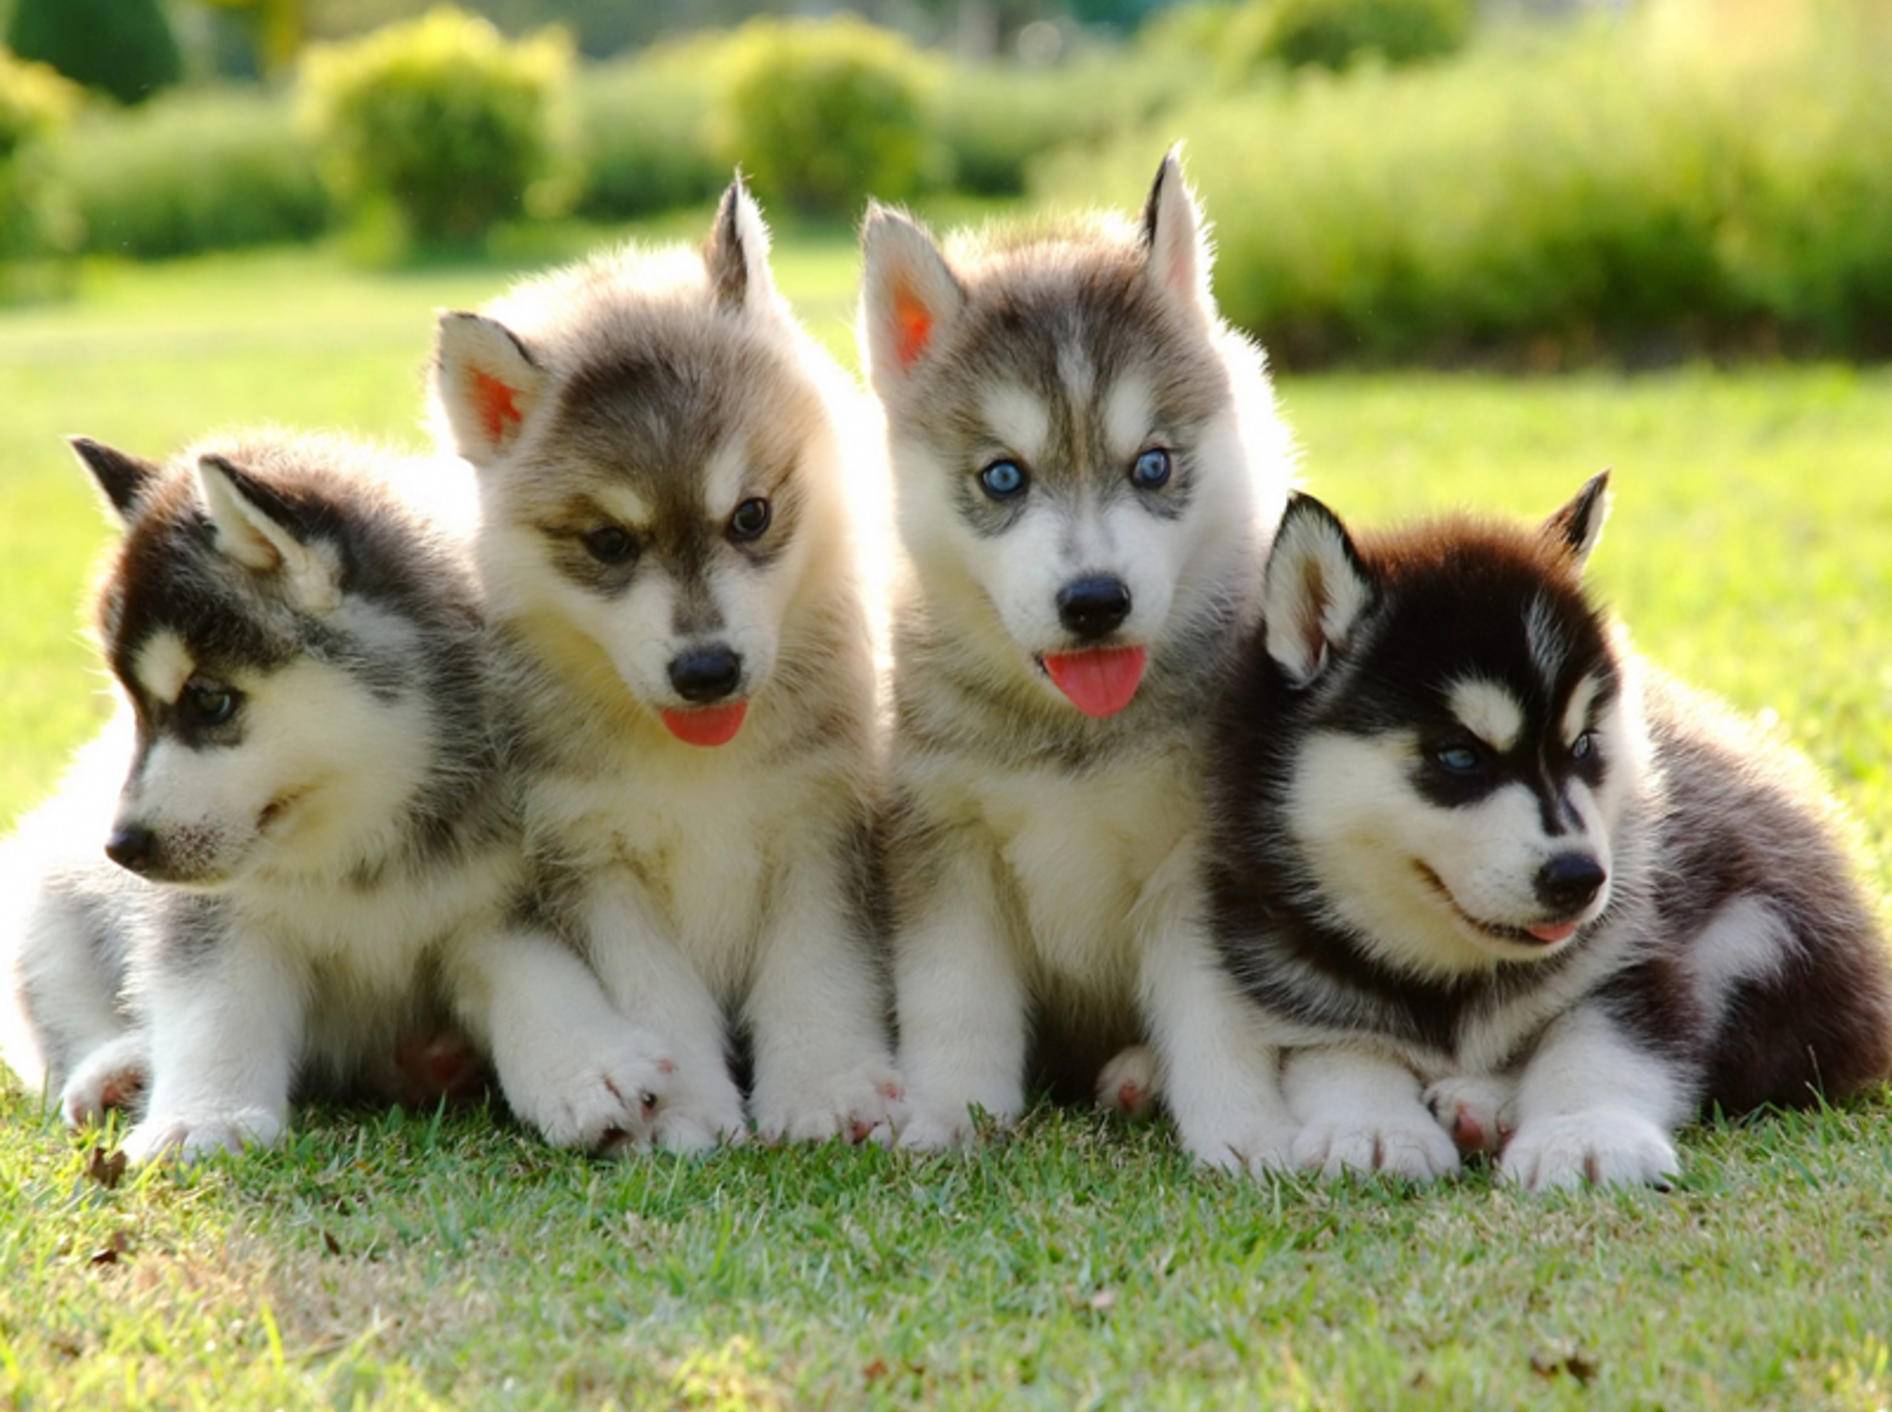 Husky-Welpen kaufen: Wichtige Tipps für die Hundewahl – Bild: Shutterstock / FreeBirdPhotos